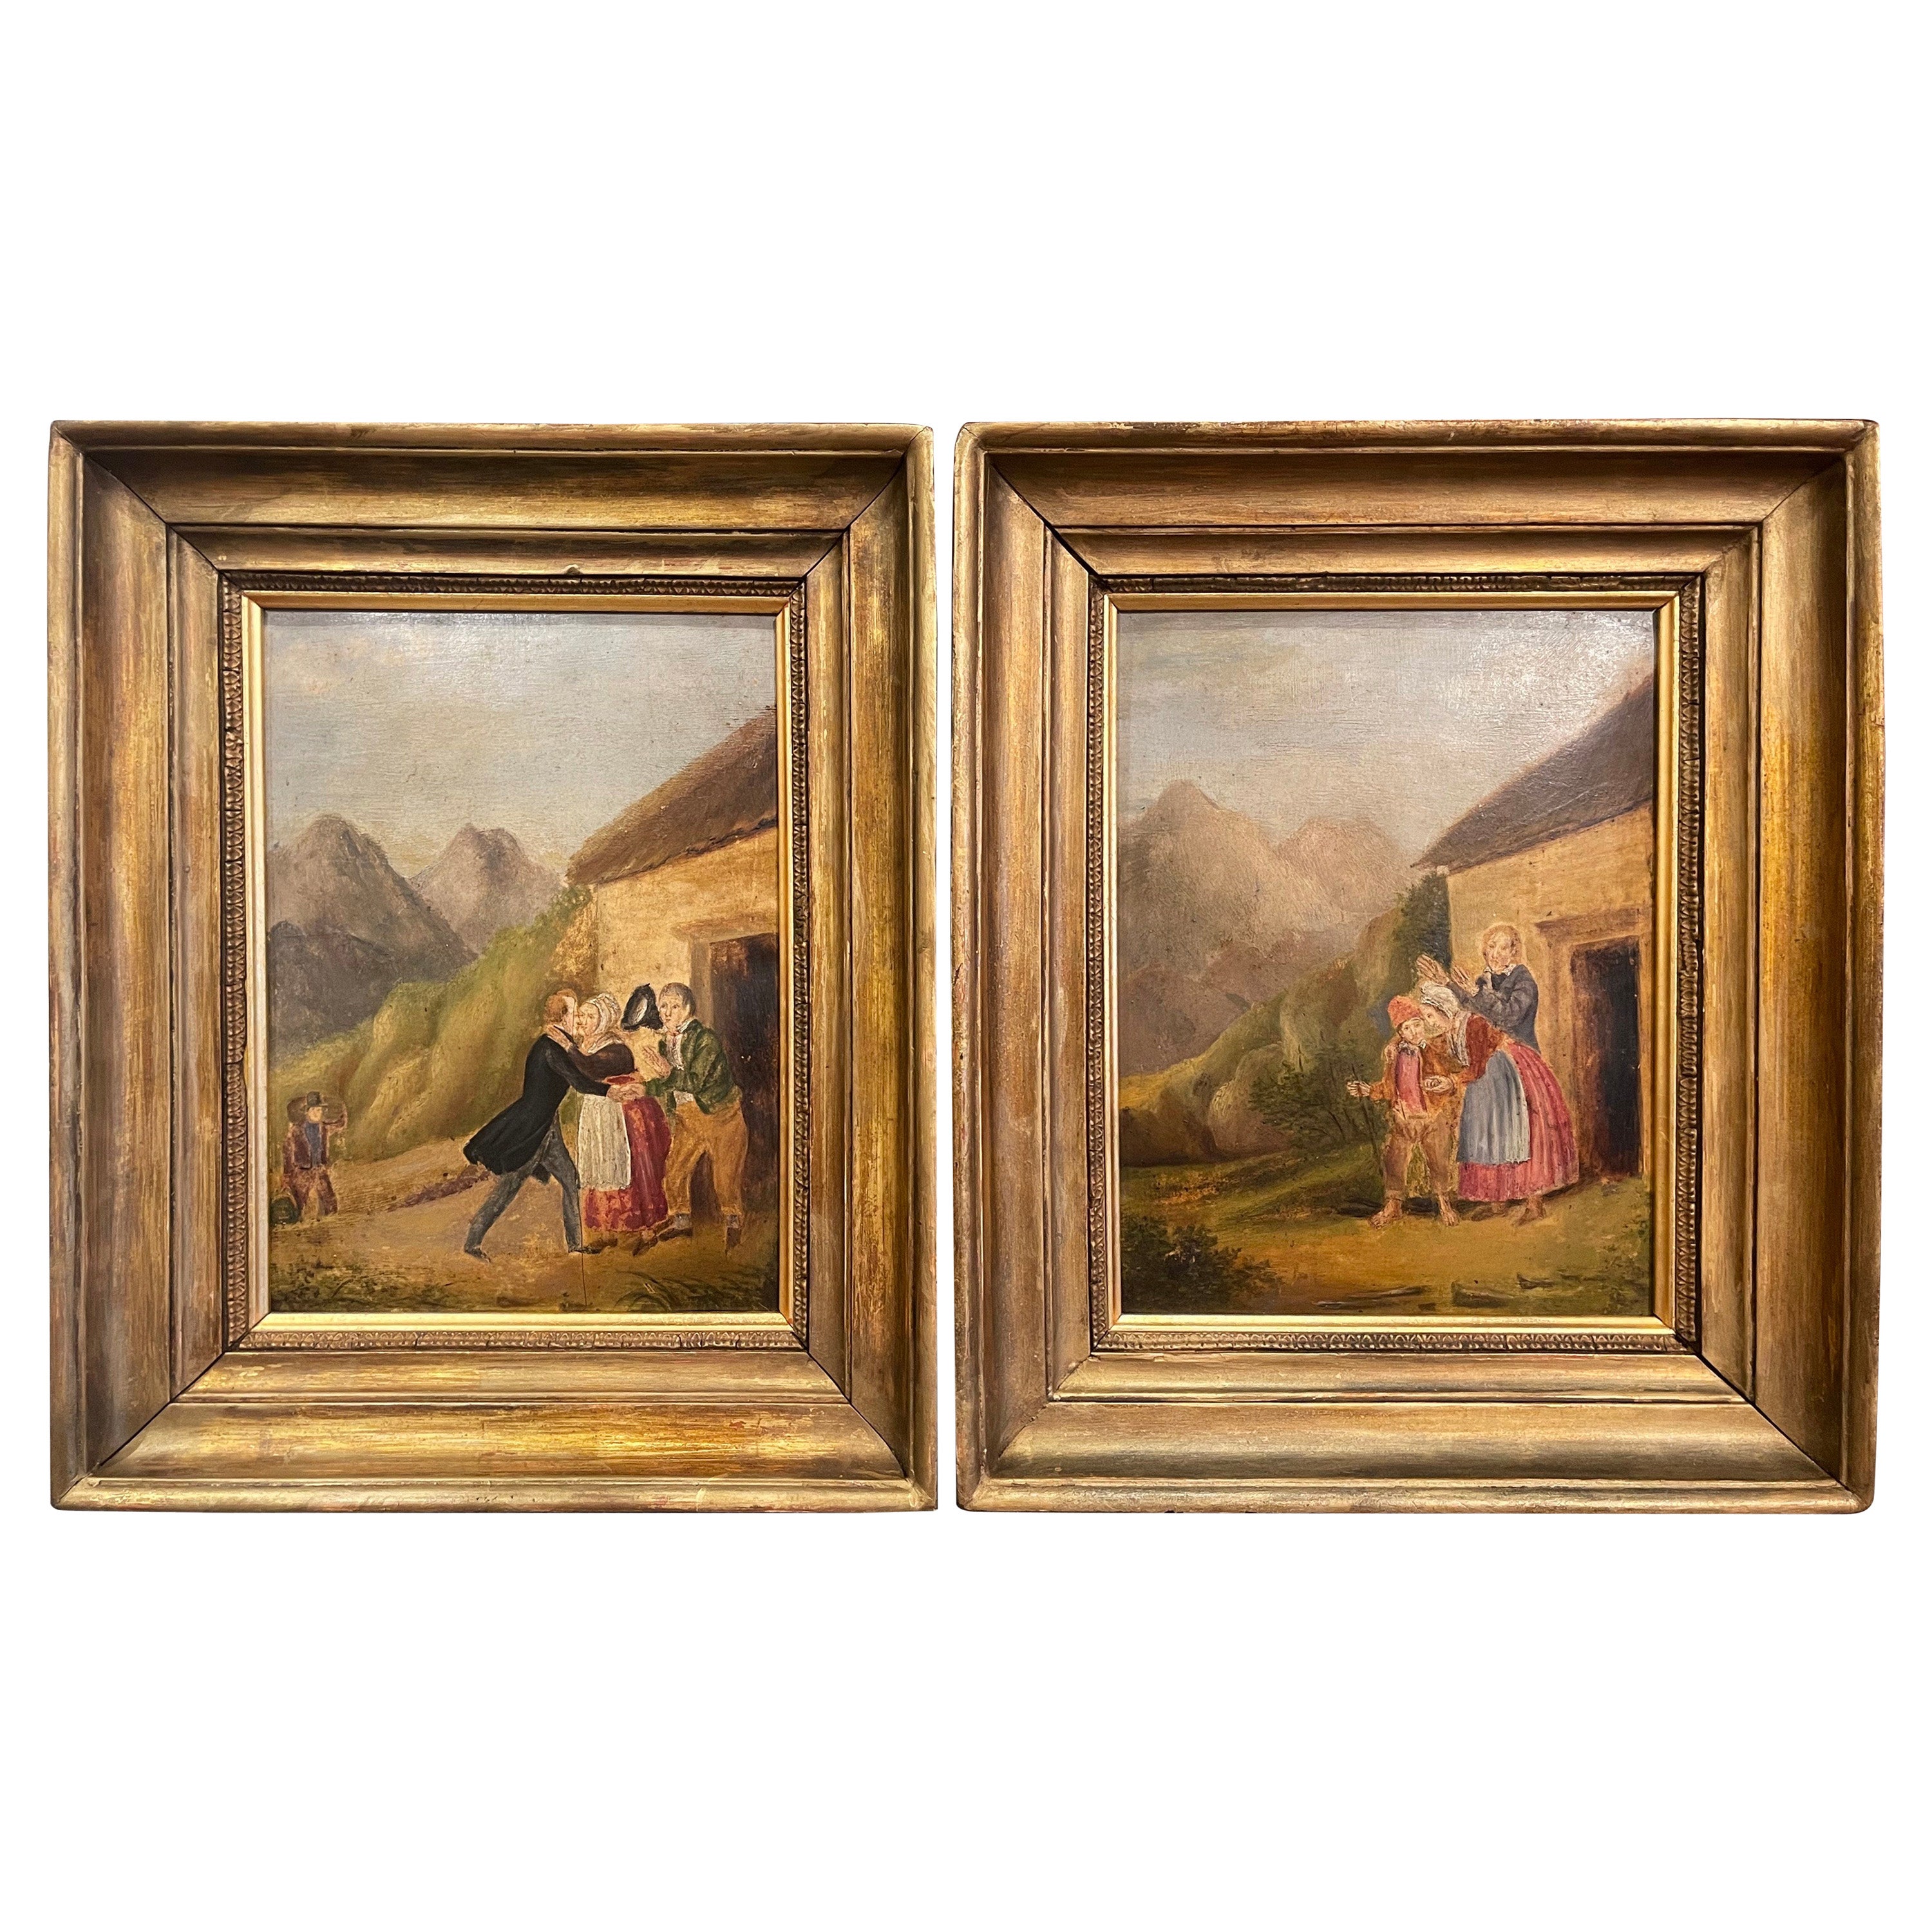 Paar französische pastorale Gemälde, Öl auf Karton, 19. Jahrhundert, in vergoldeten Rahmen